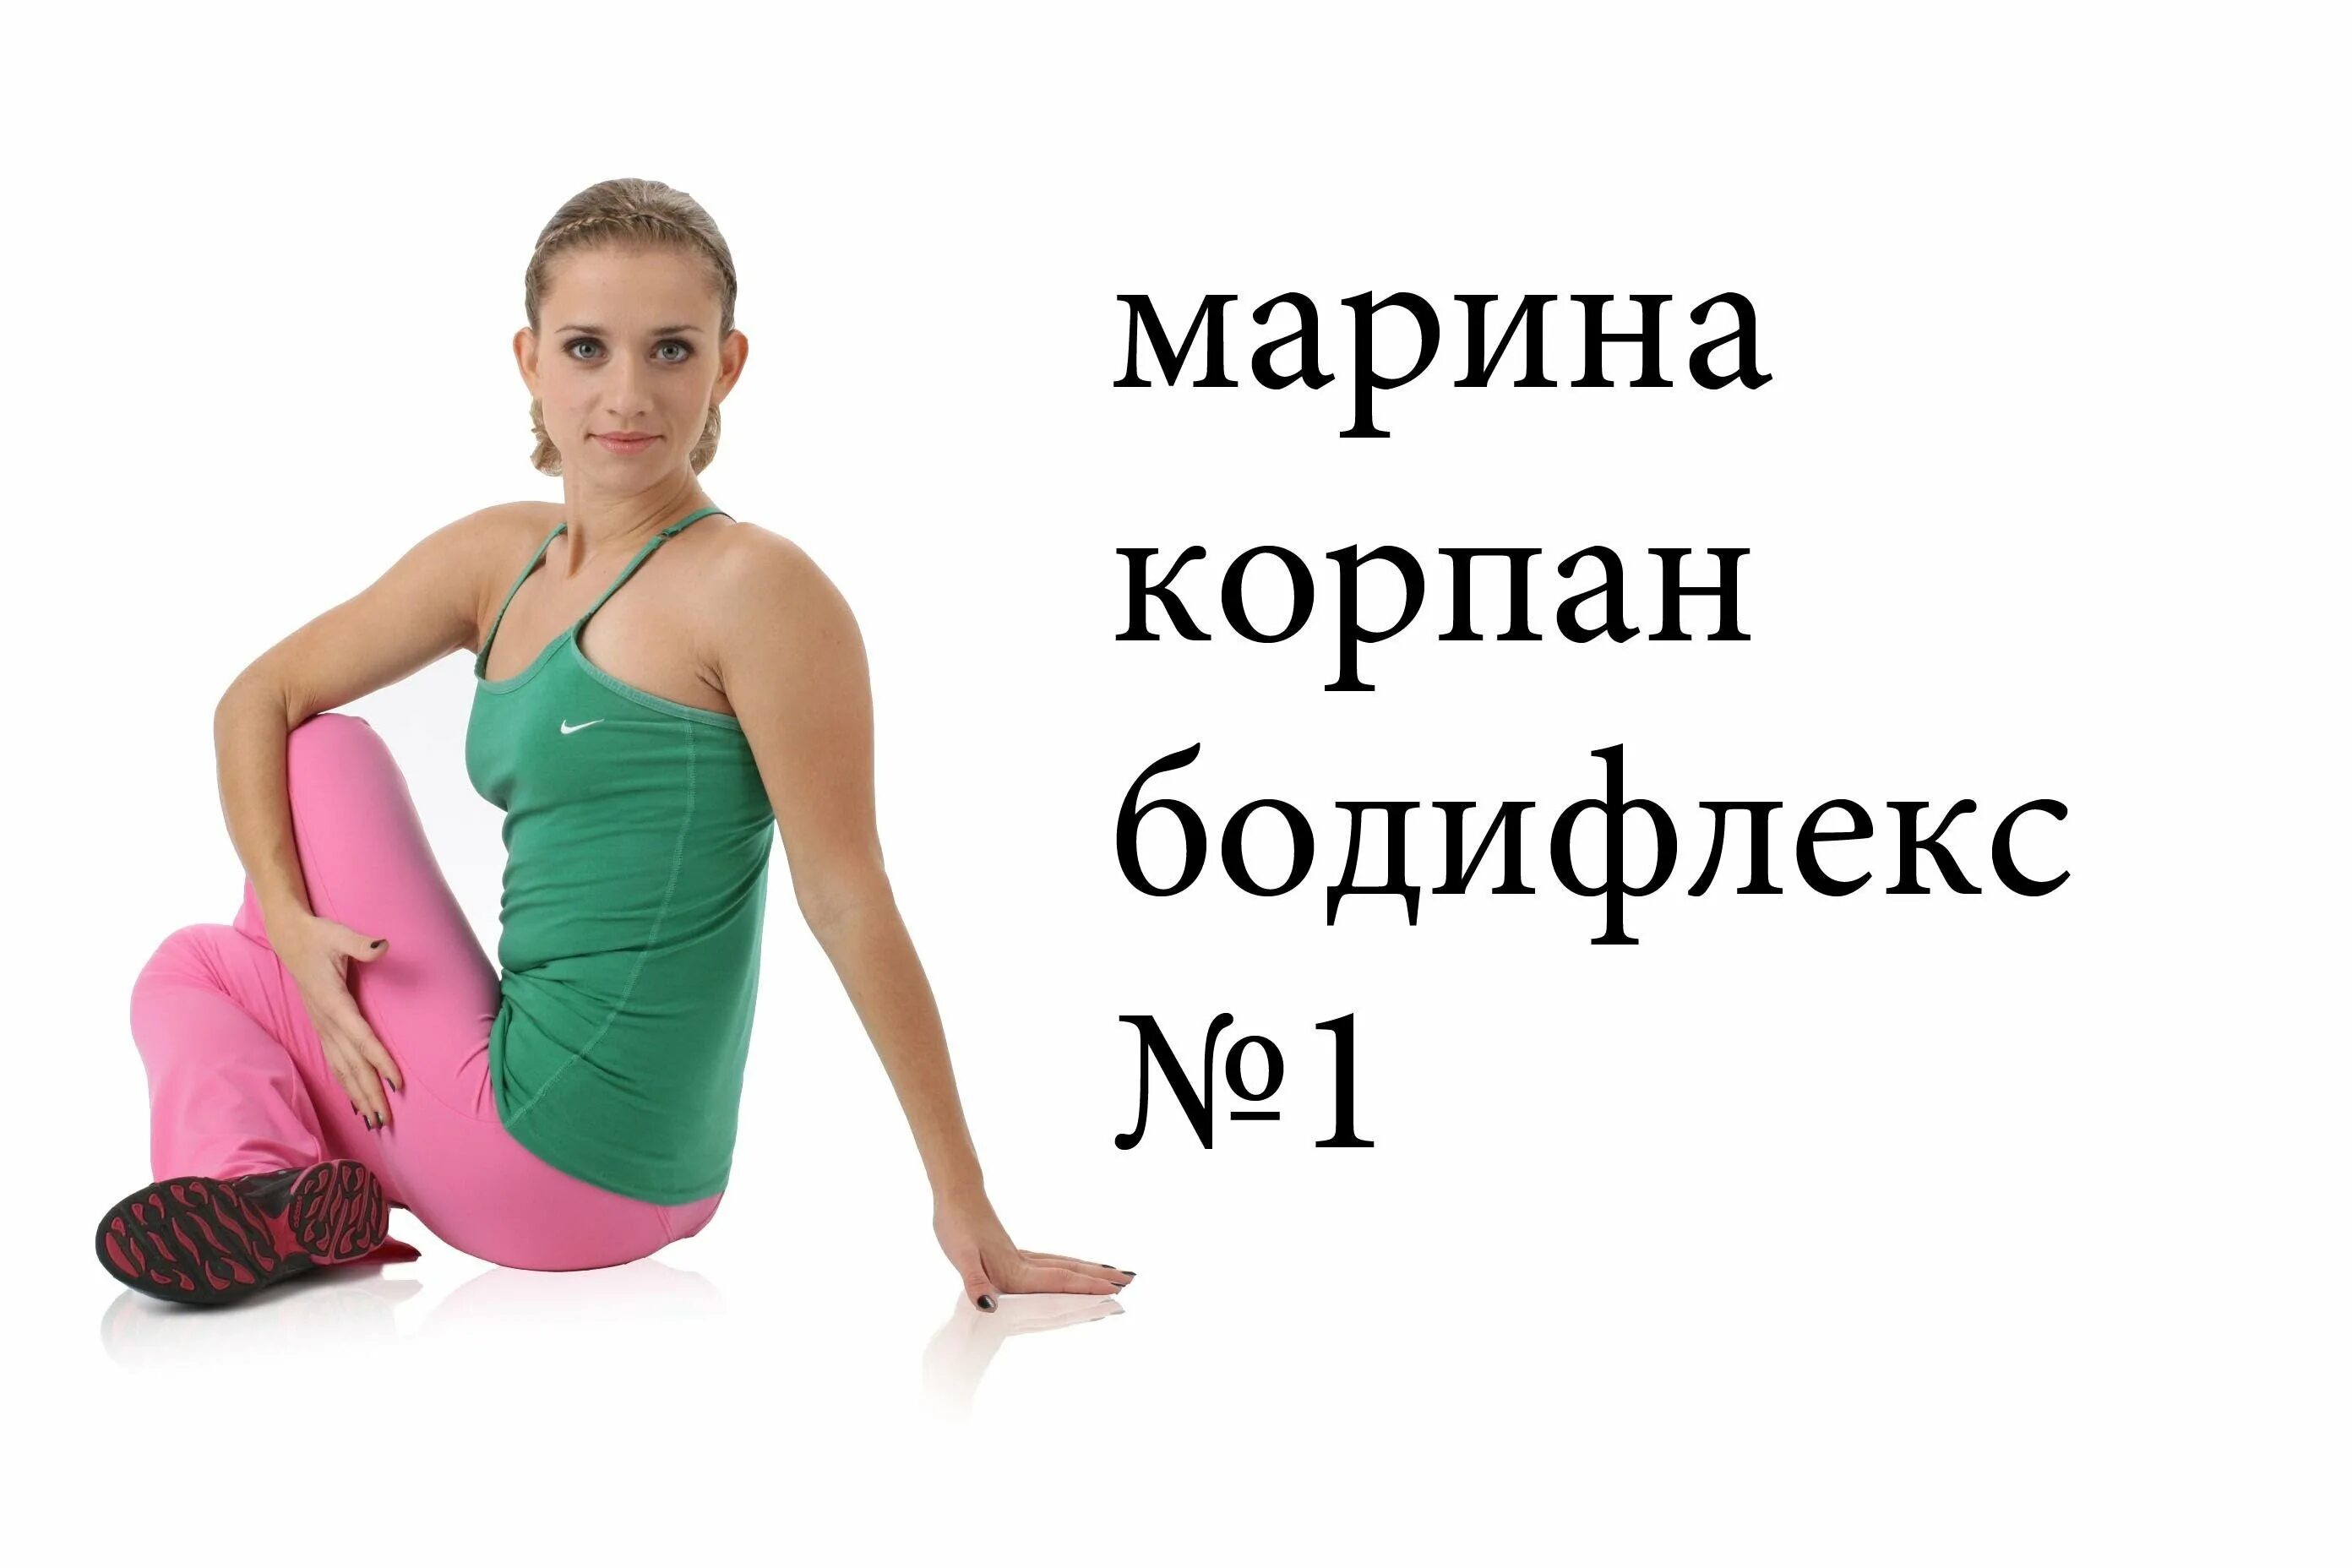 Бодифлекс упражнения с Мариной Корпан. Дыхательная гимнастика для похудения бодифлекс с Мариной Корпан.